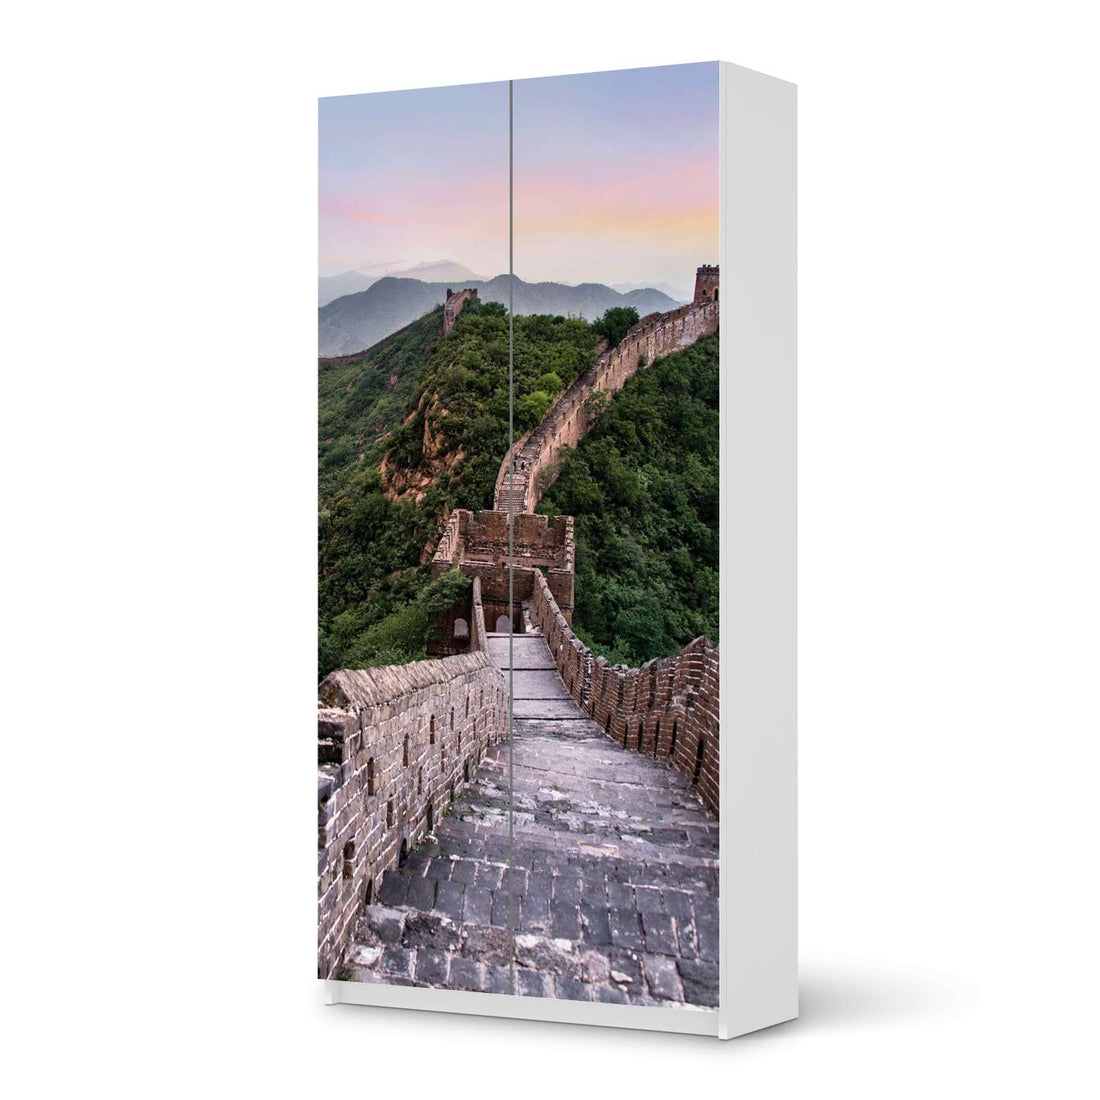 Klebefolie für Möbel The Great Wall - IKEA Pax Schrank 201 cm Höhe - 2 Türen - weiss